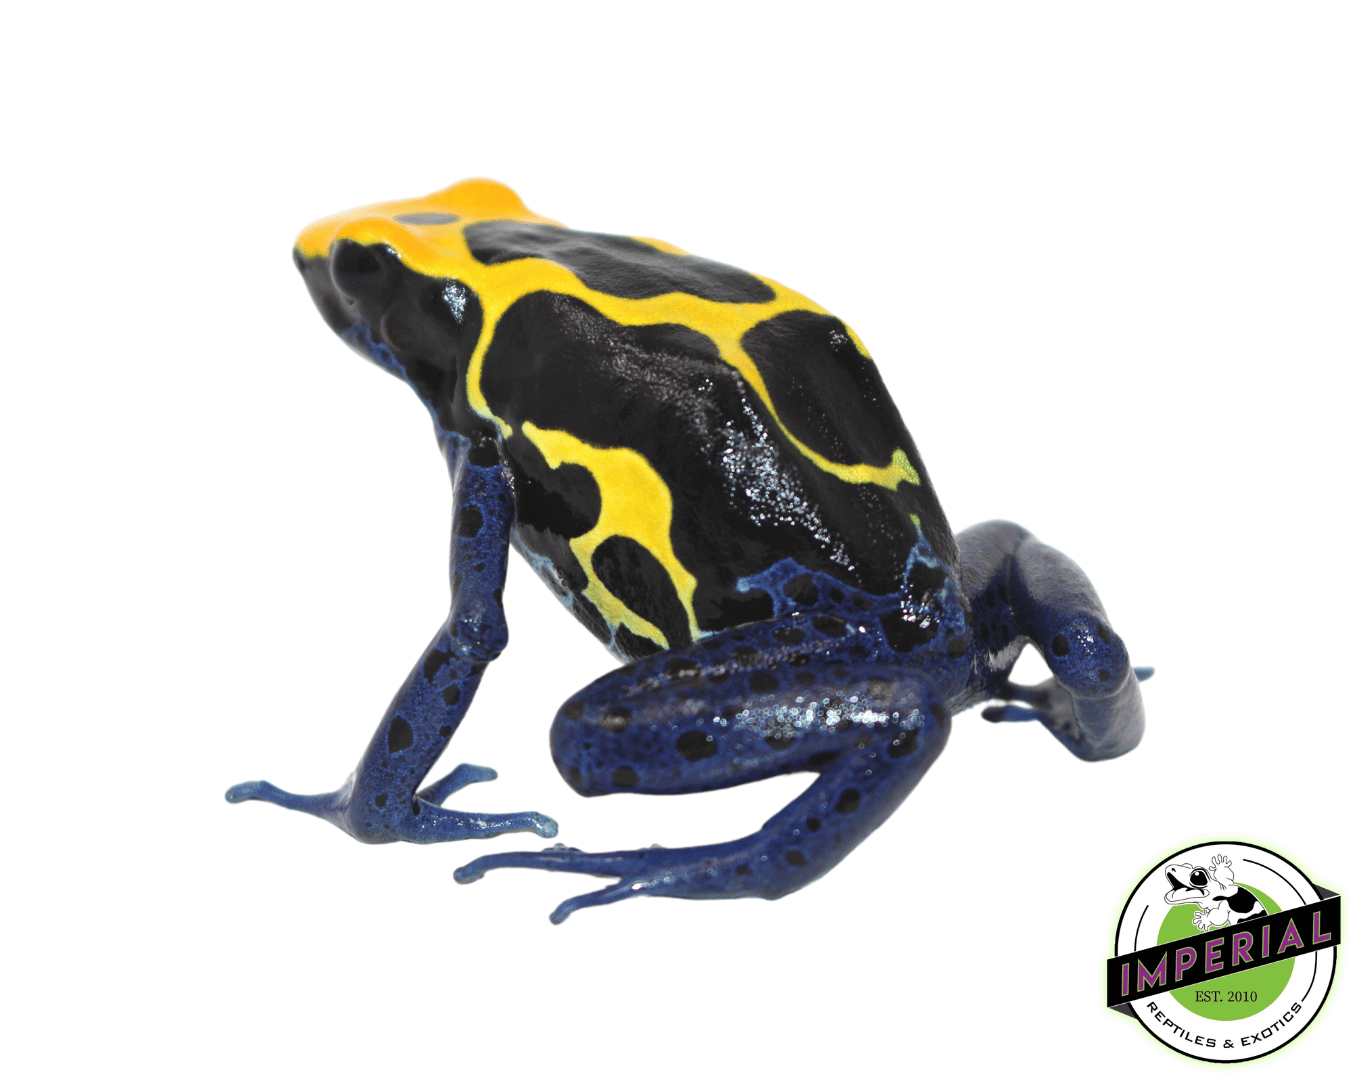 cobalt blue poison dart frog for sale, buy amphibians online